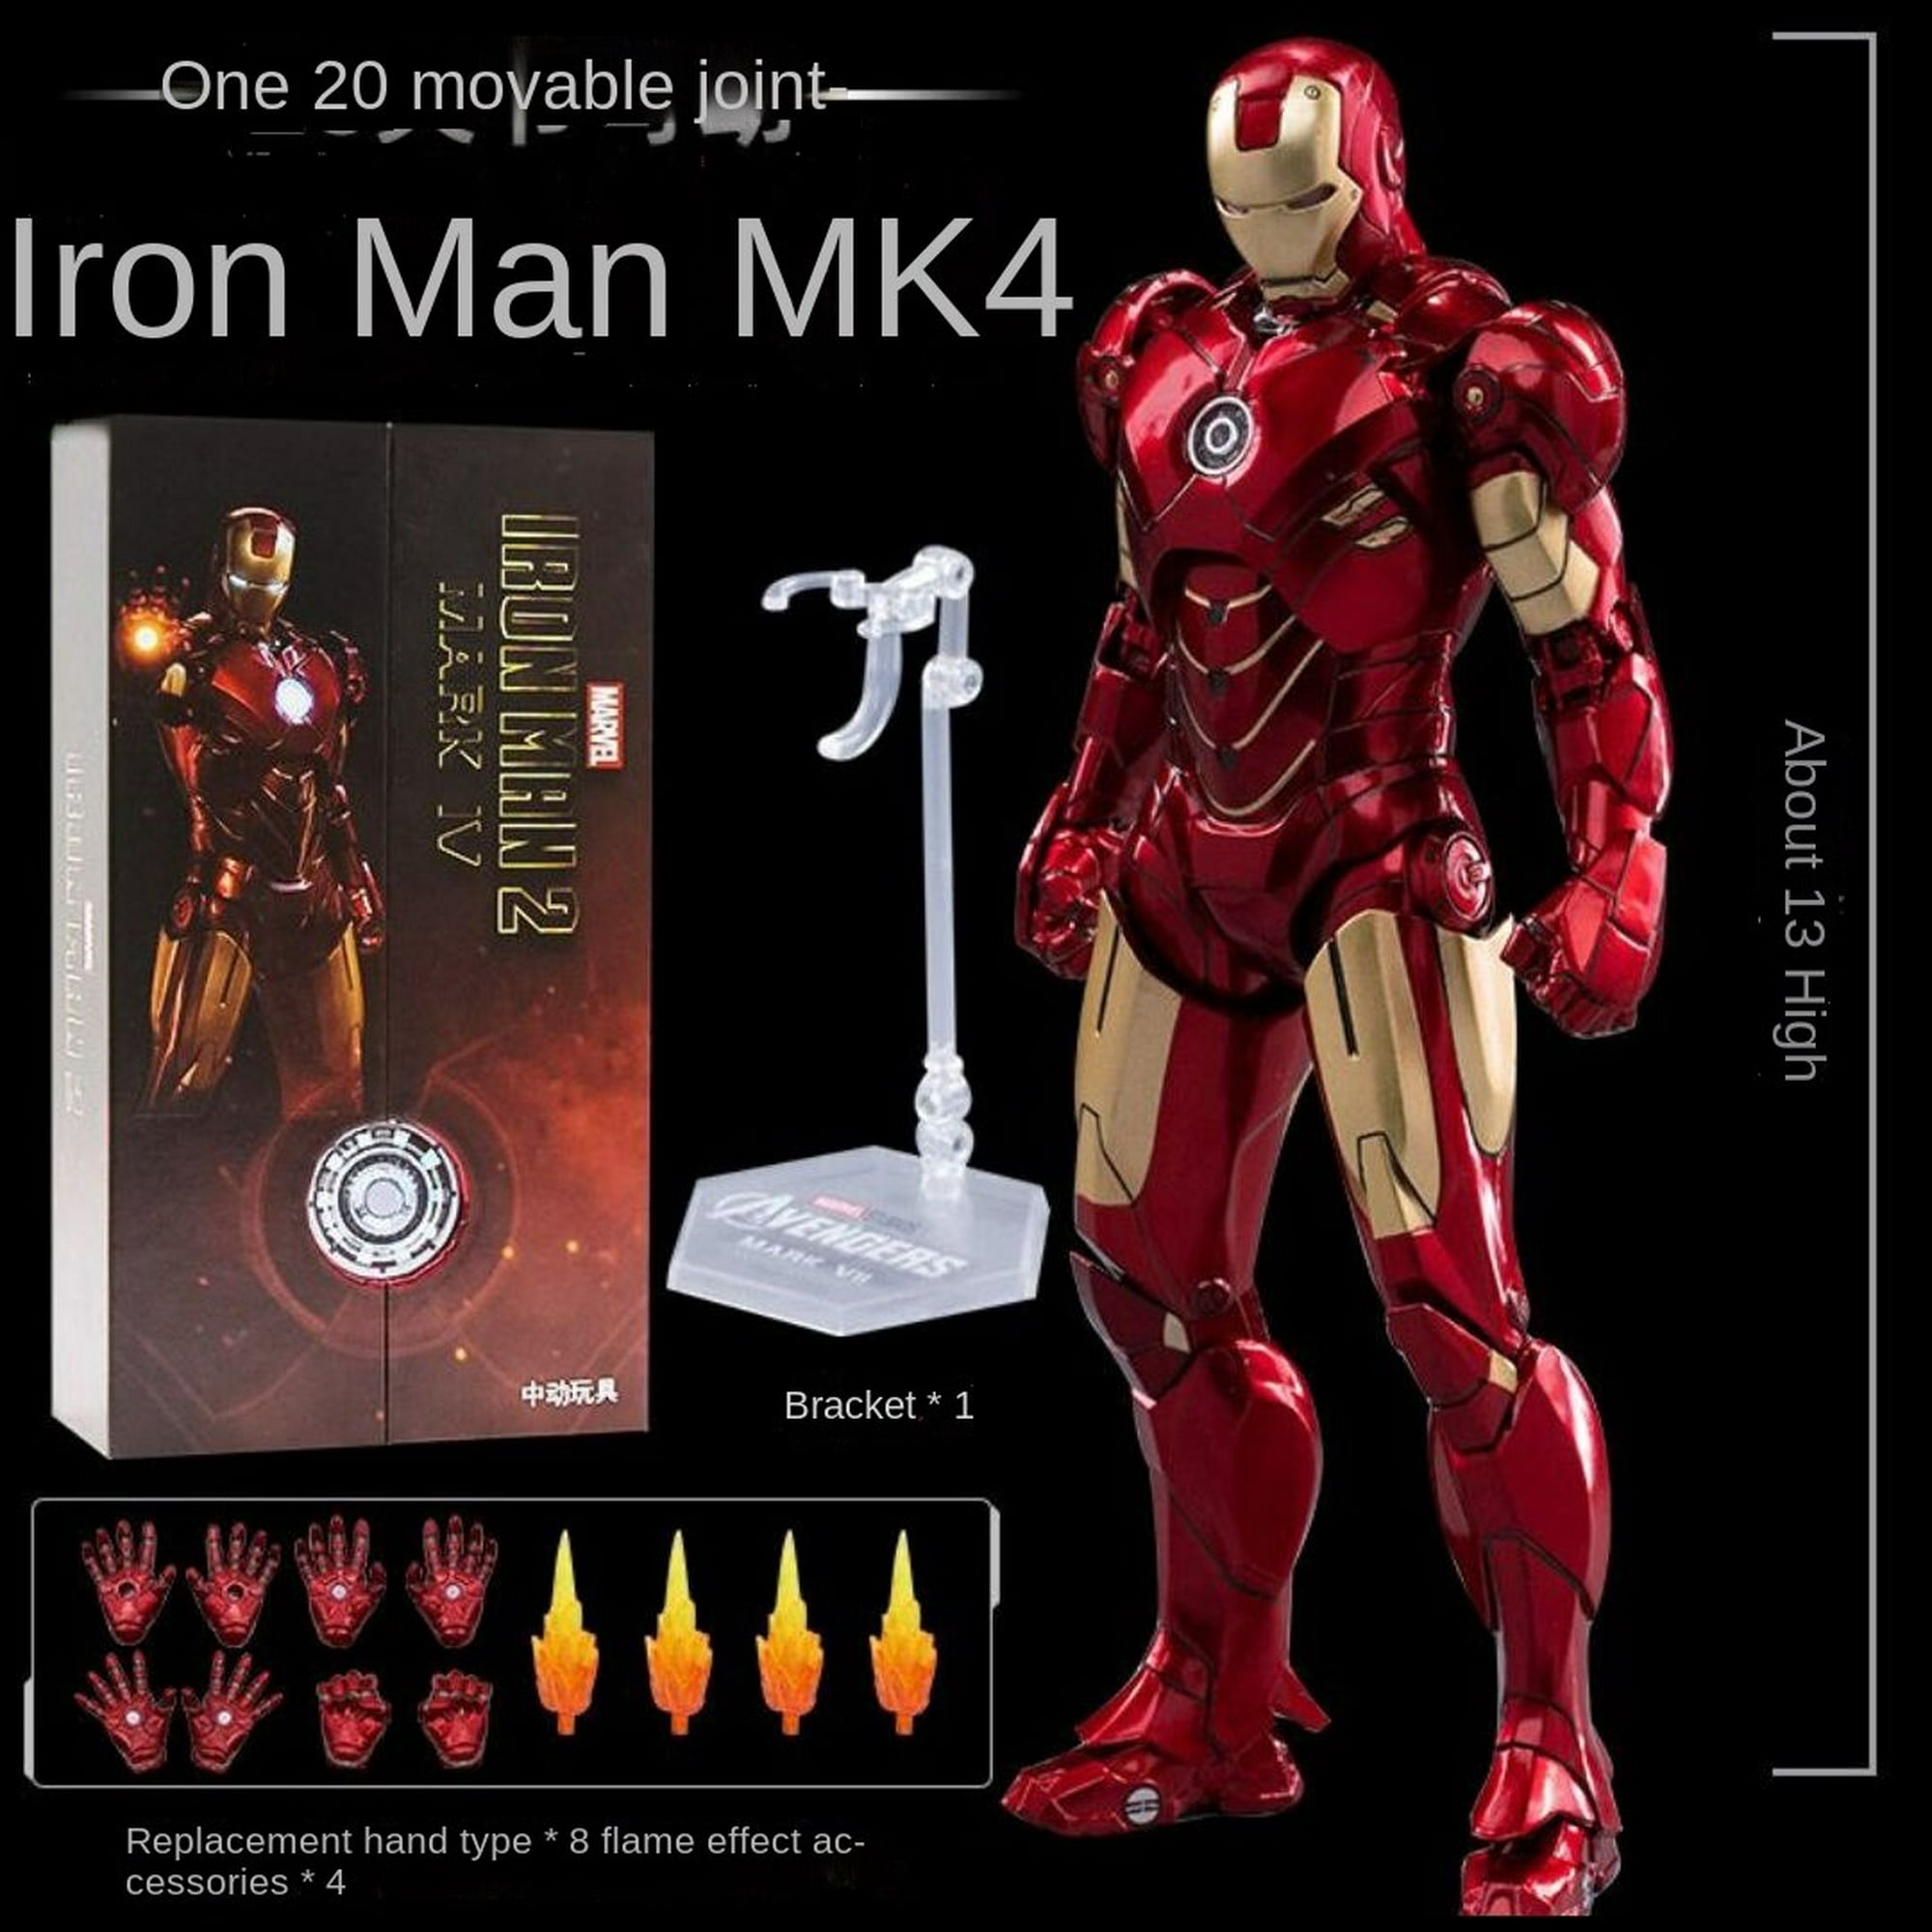 Comprar Marvel Legends Retro Figura Iron Man Figuras de acción y ac